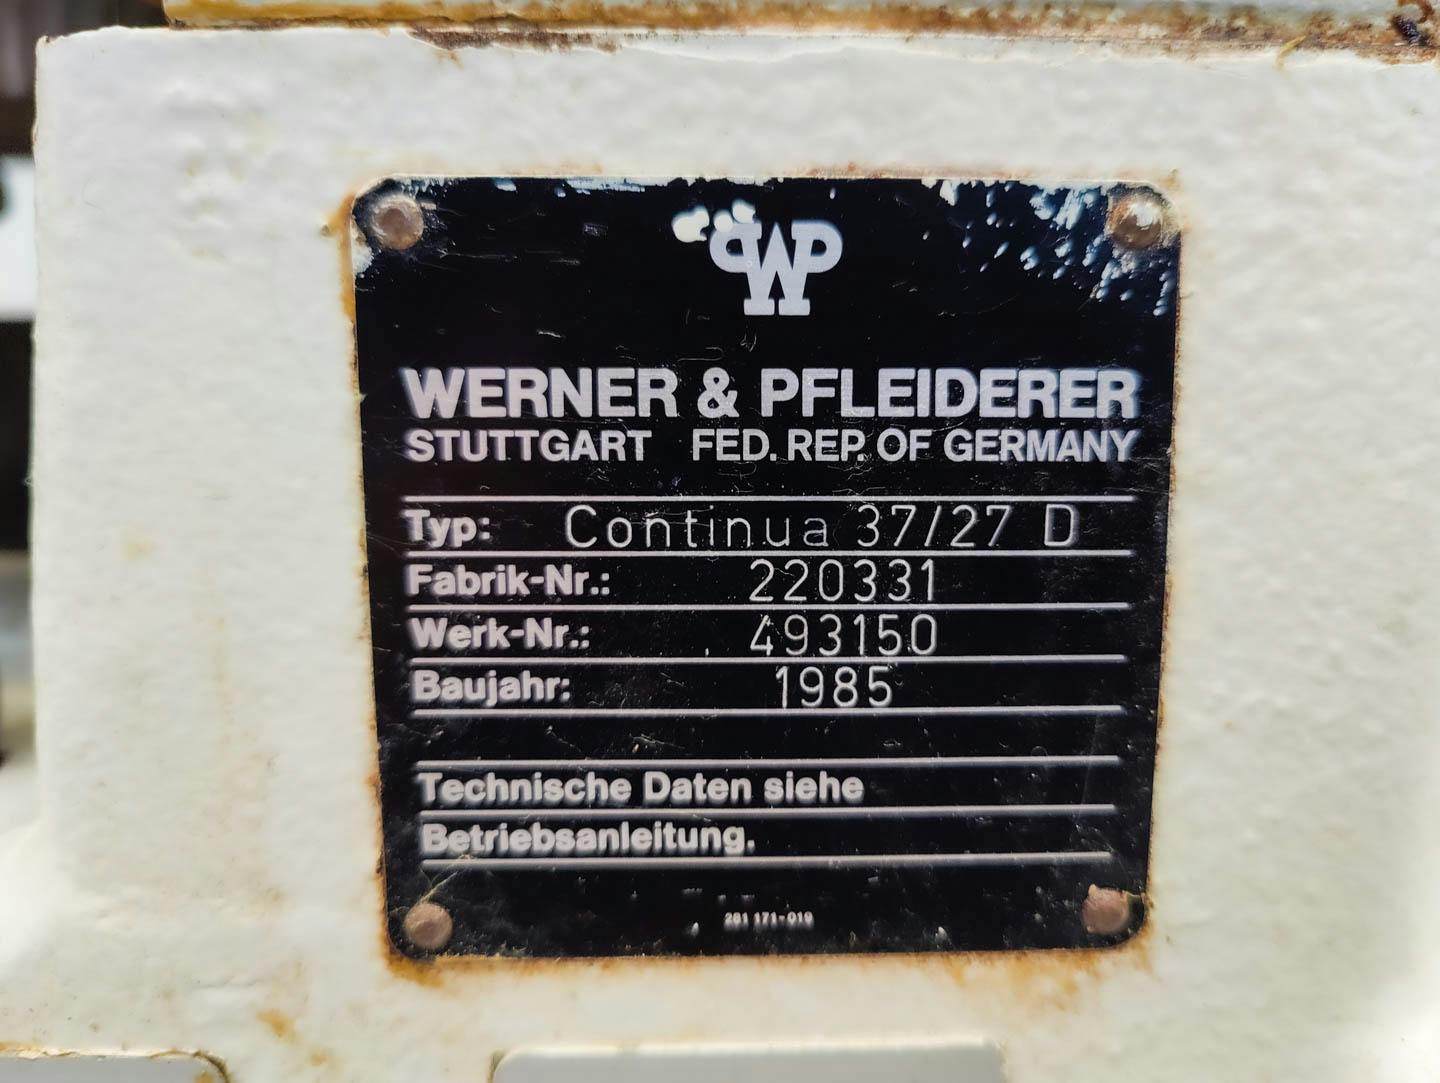 Werner & Pfleiderer Continua 37/27 D - Doppelschneckenextruder - image 12